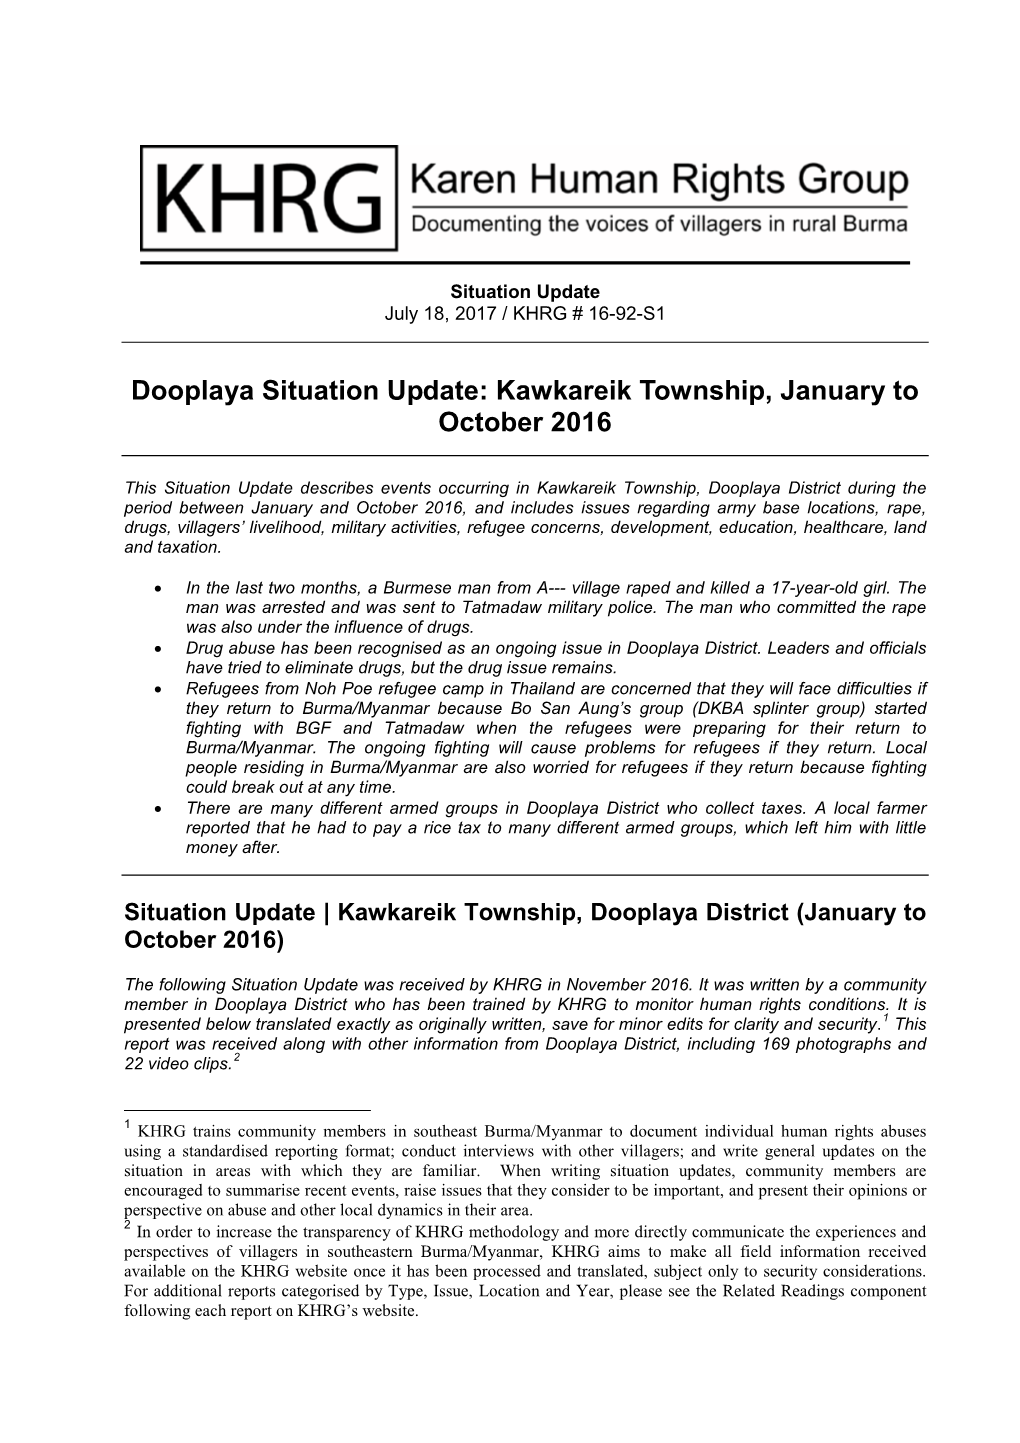 Dooplaya Situation Update: Kawkareik Township, January to October 2016